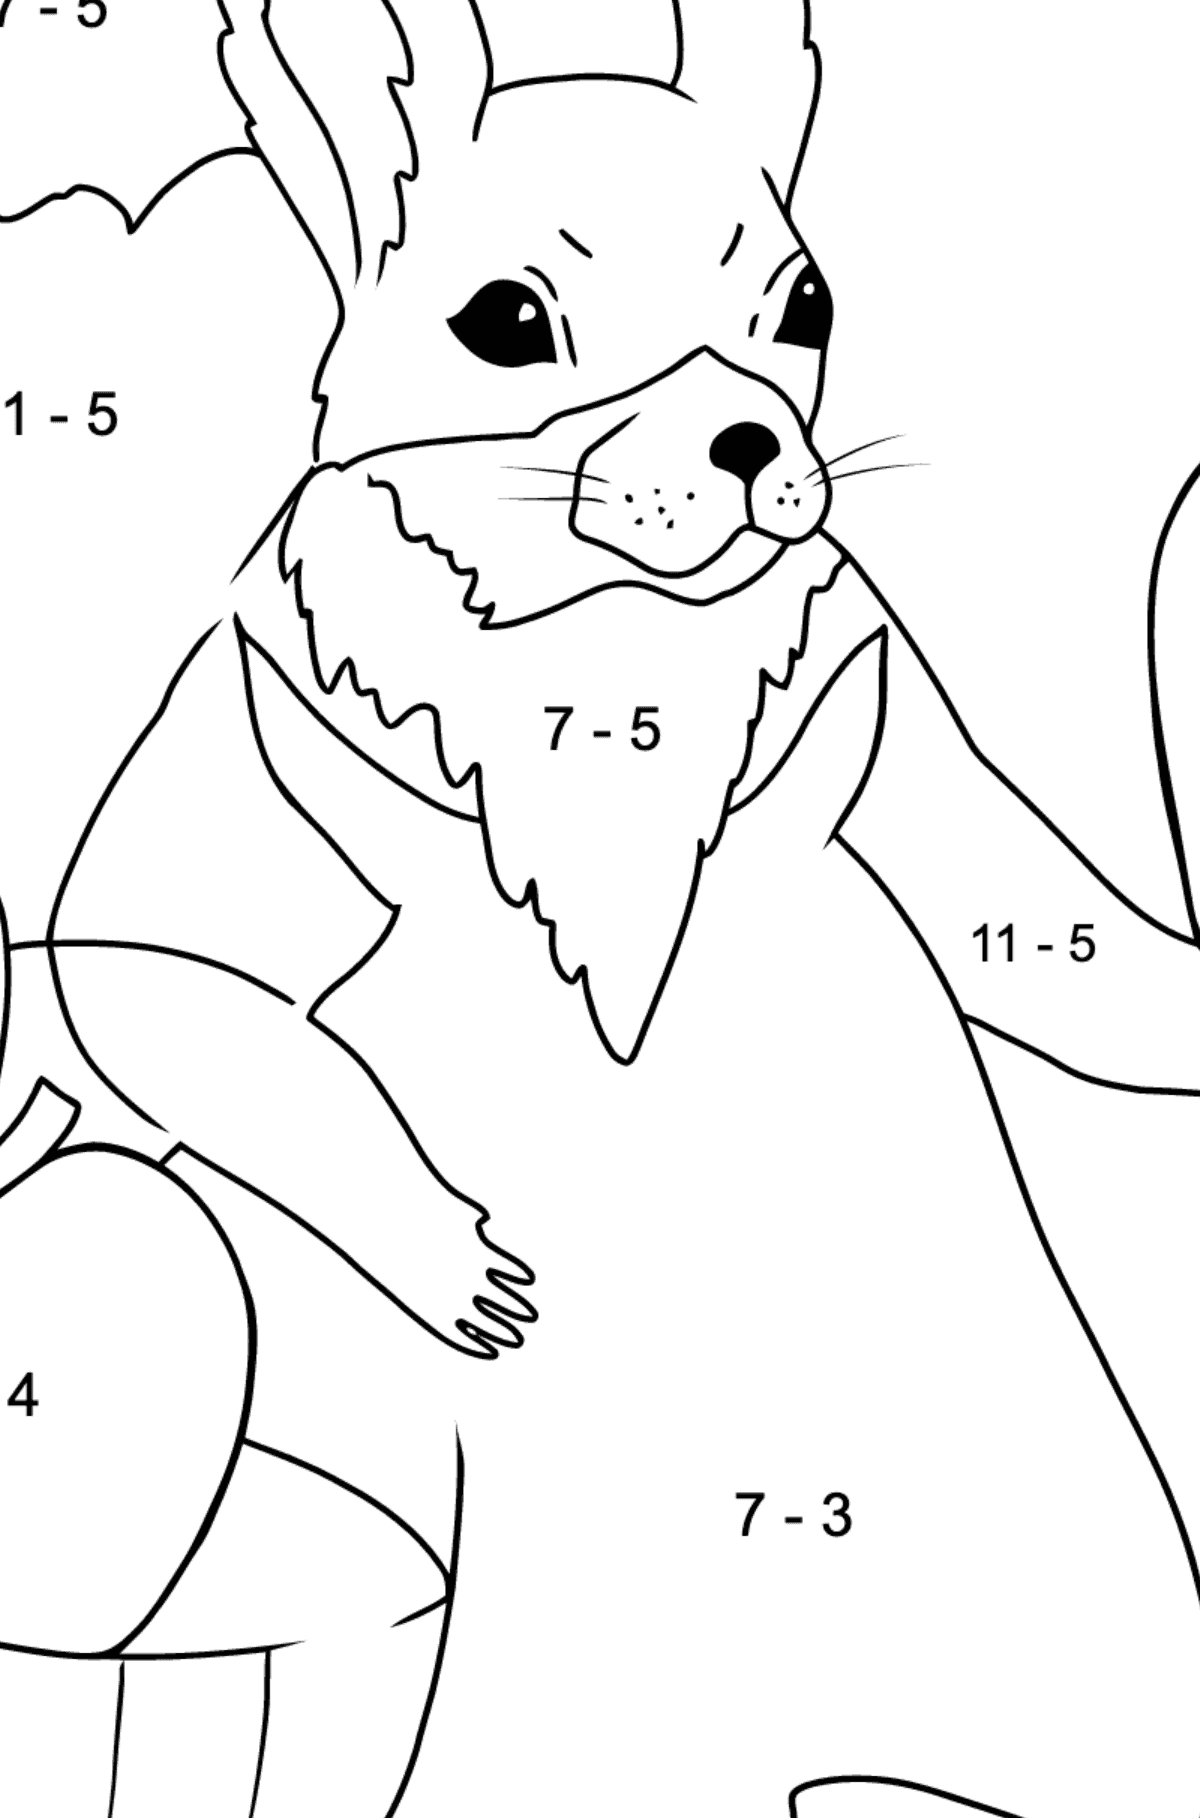 Eichhörnchen Ausmalbild für Kinder - Mathe Ausmalbilder - Subtraktion für Kinder